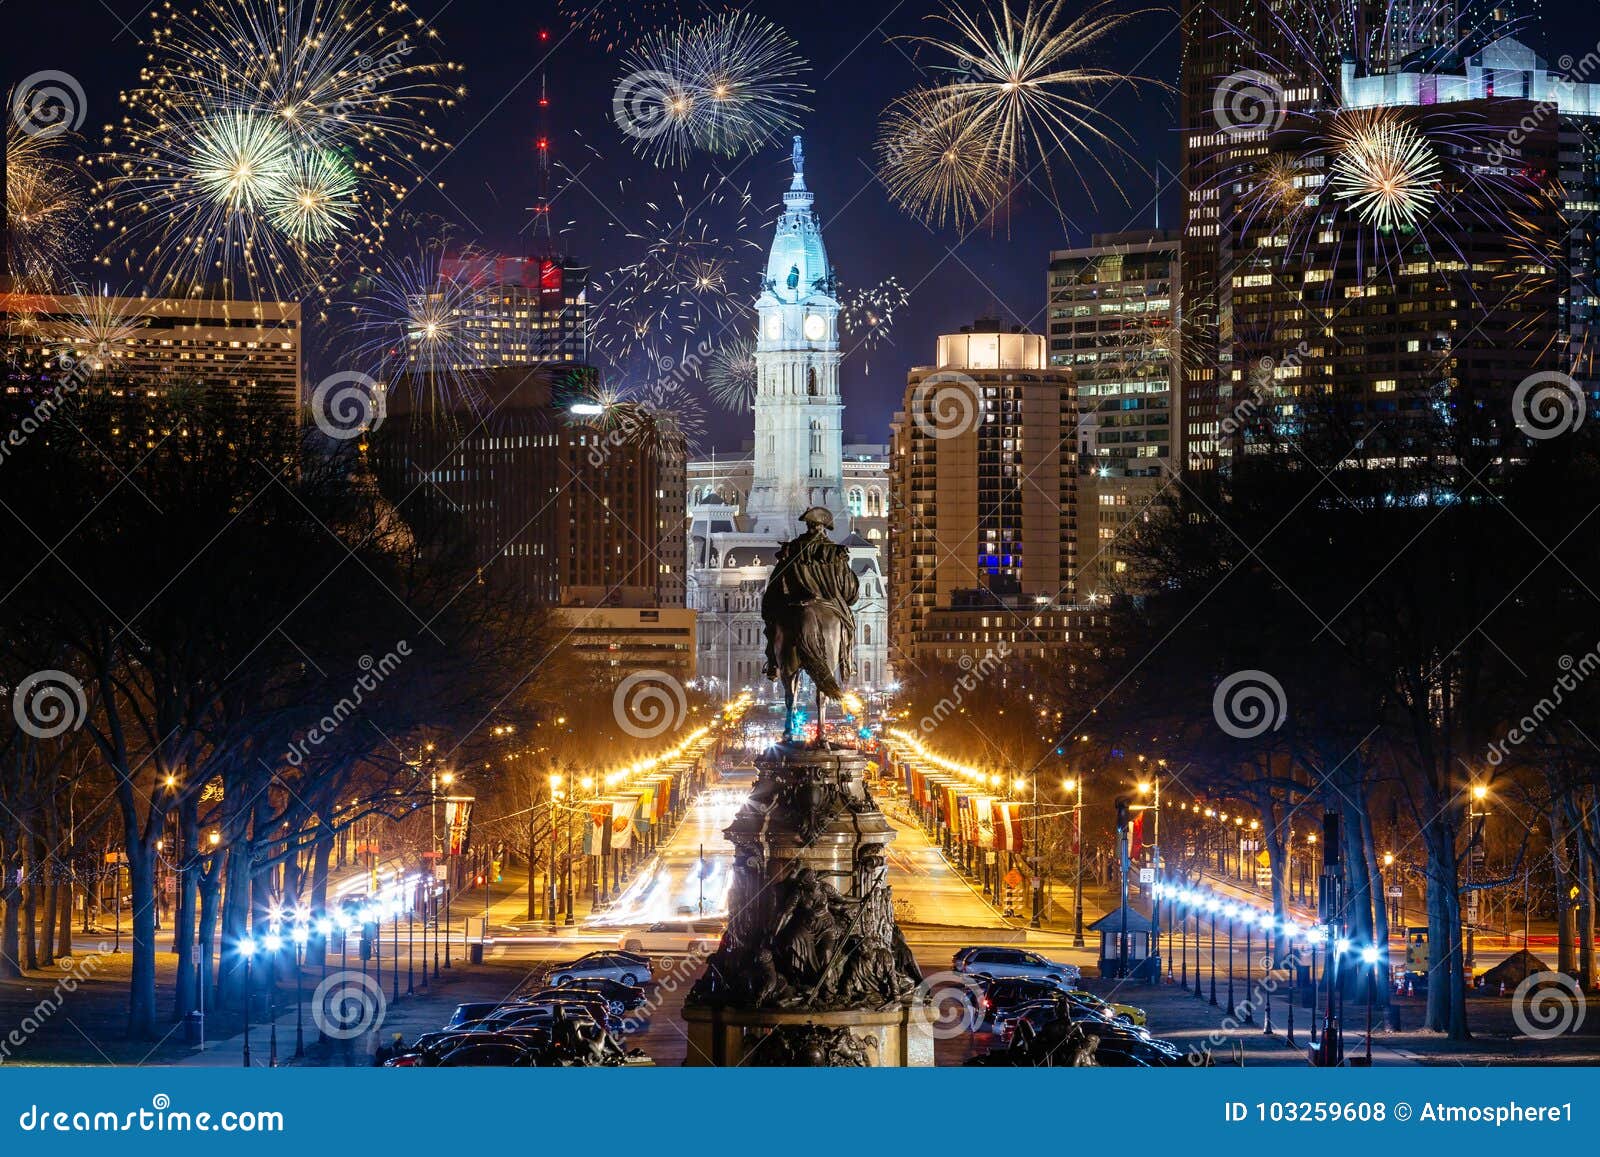 philadelphia city skyline with fireworks